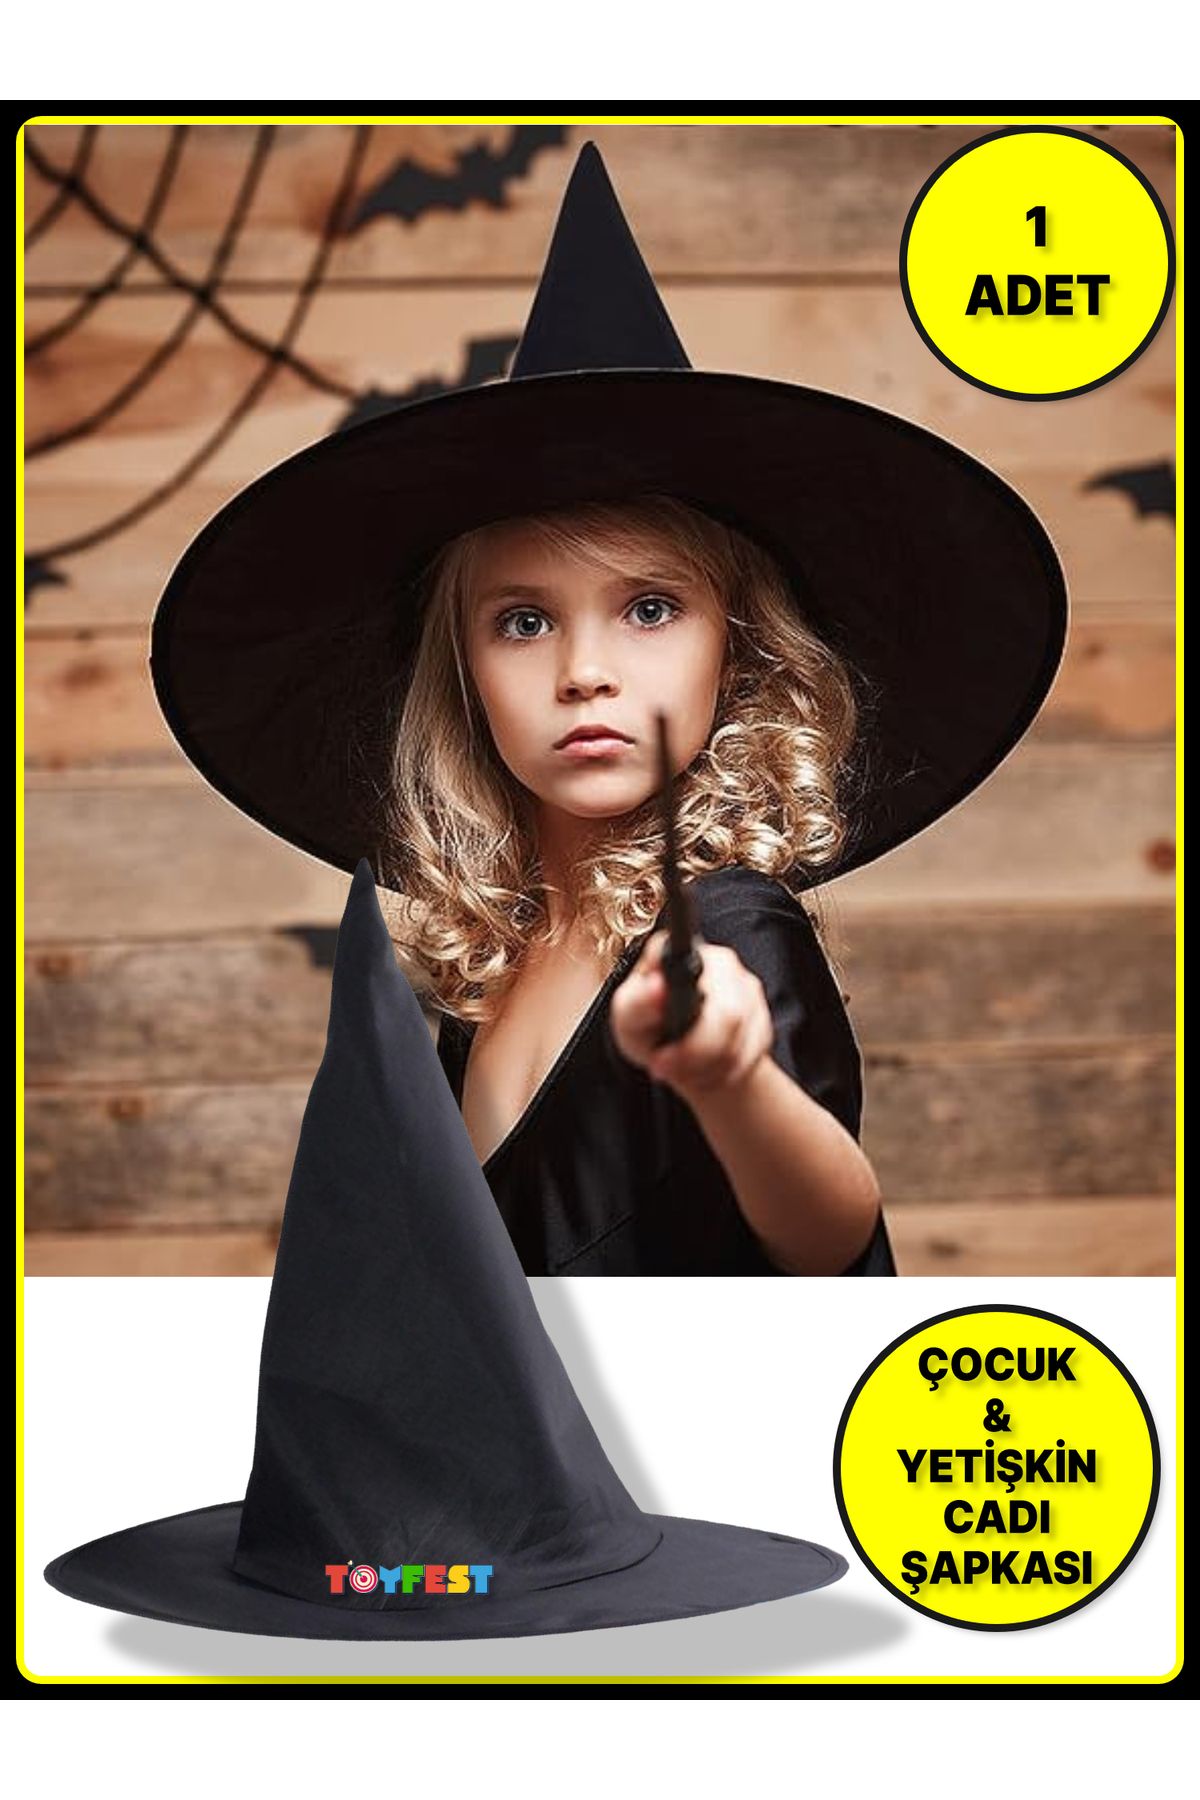 TOYFEST Çocuk Ve Yetişkinler Için Cadı Şapkası - 1 Adet